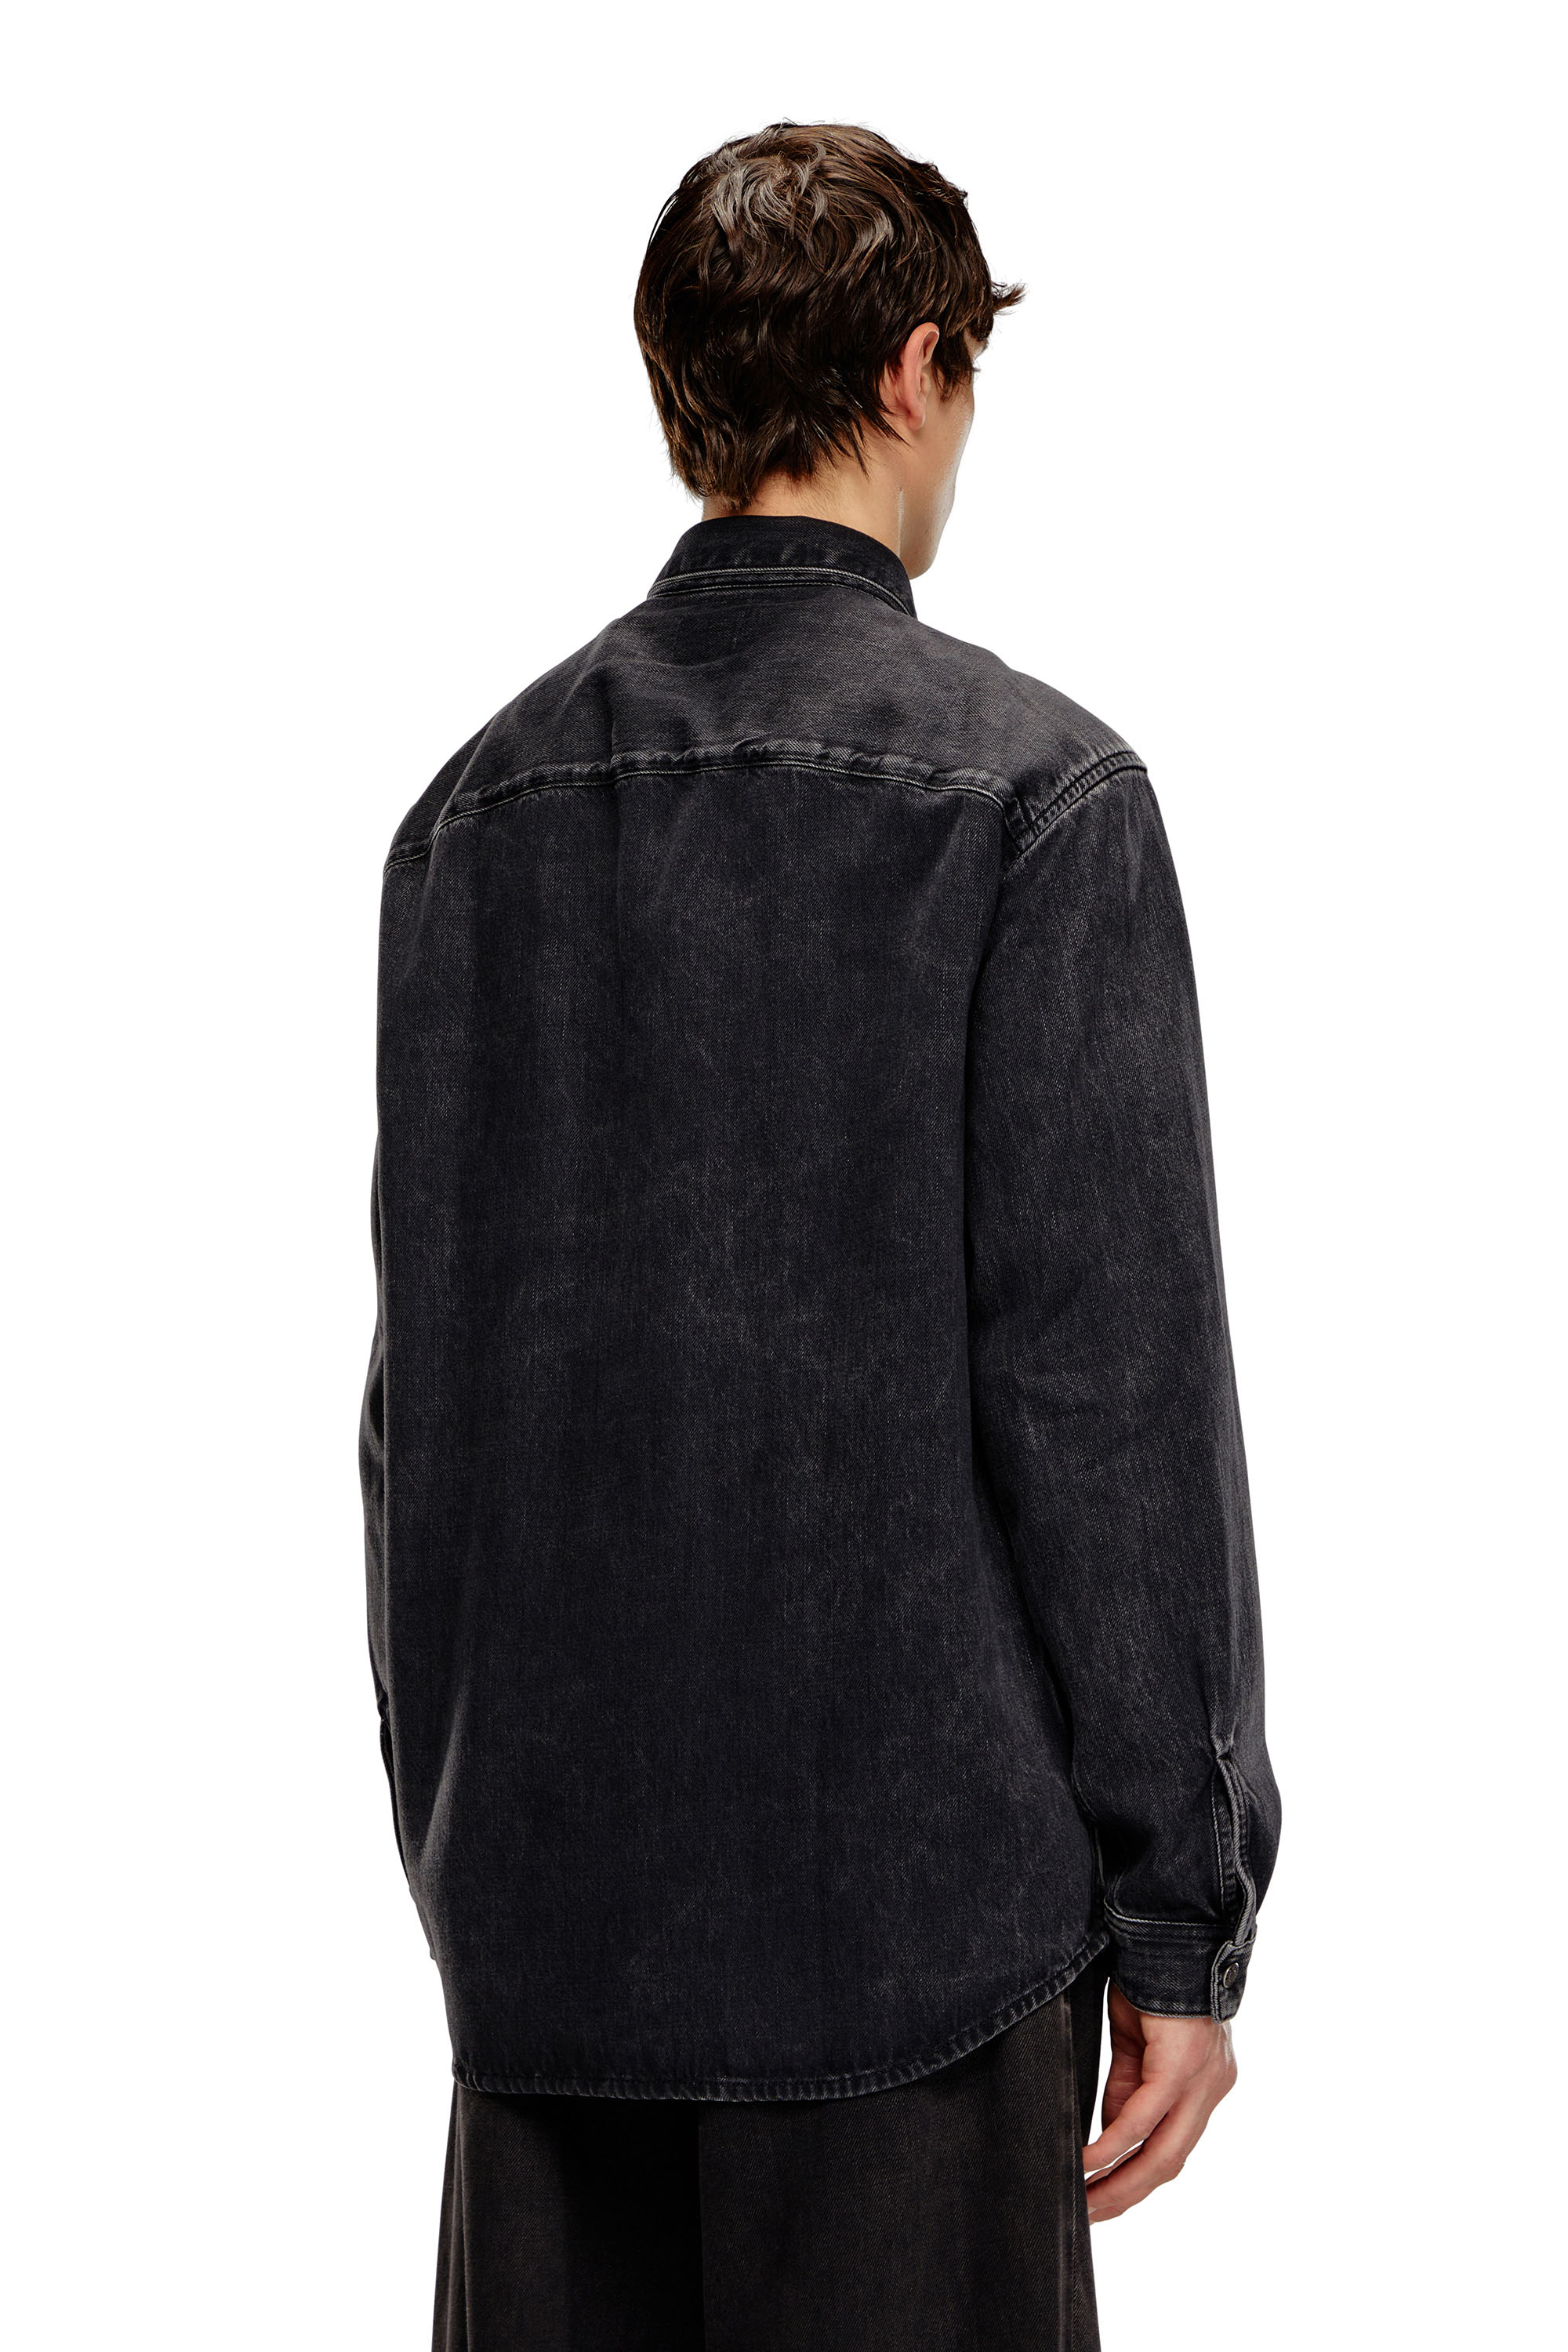 Diesel - D-SIMPLY, Male Shirt in Tencel denim in Black - Image 2